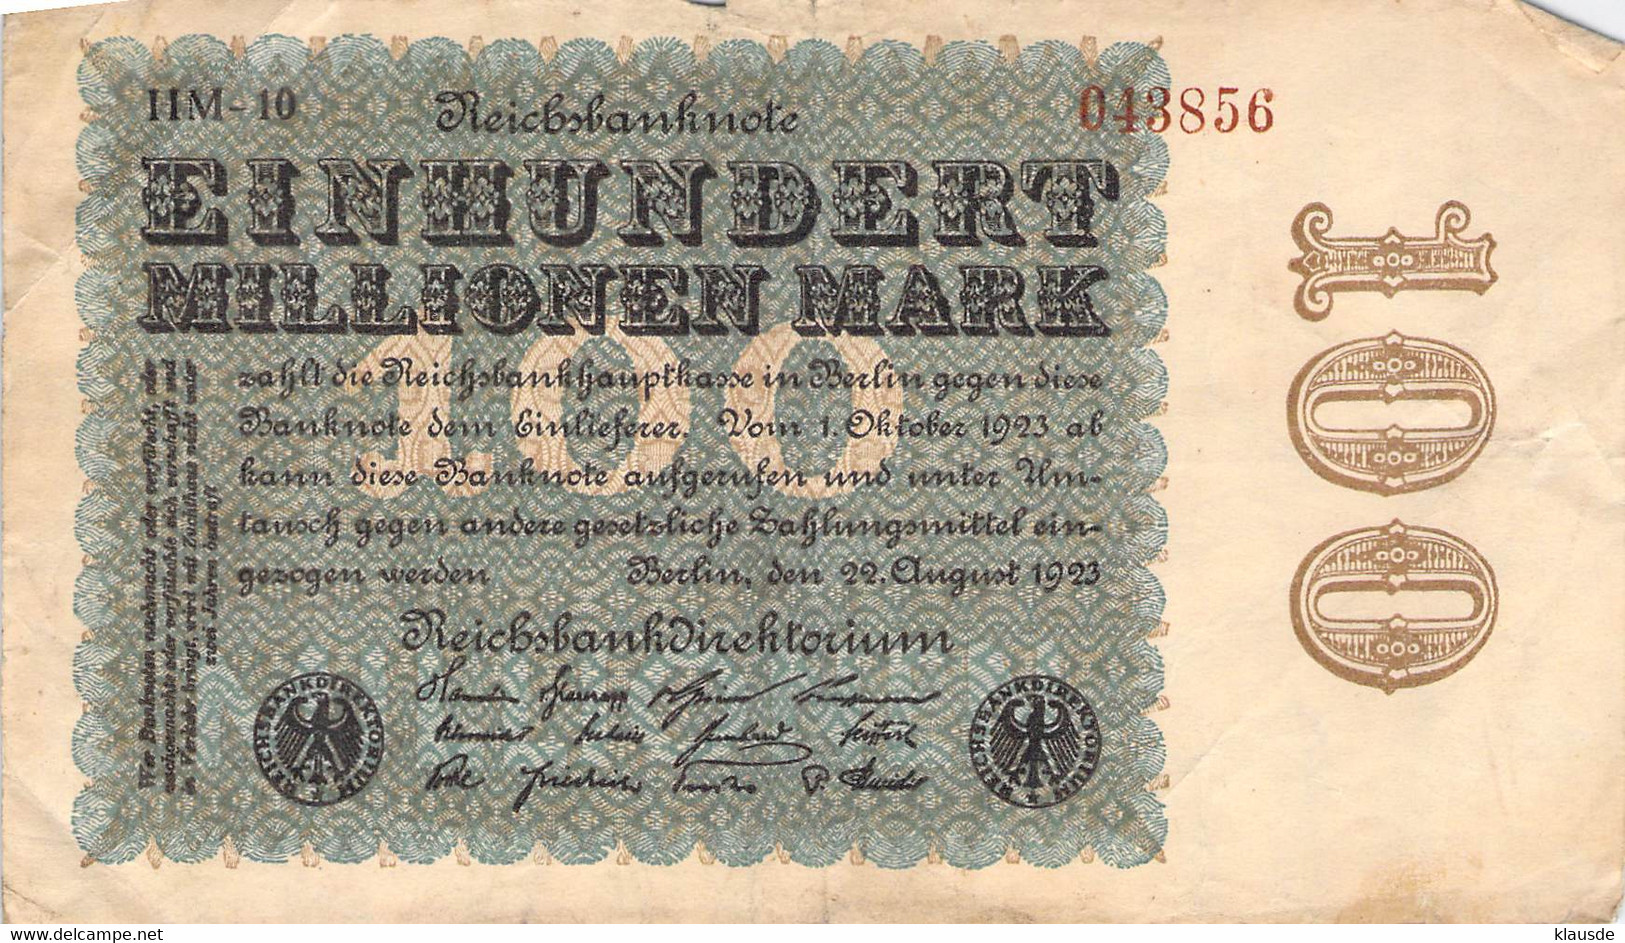 100 Mio Mark Reichsbanknote VF/F (III) - 100 Millionen Mark